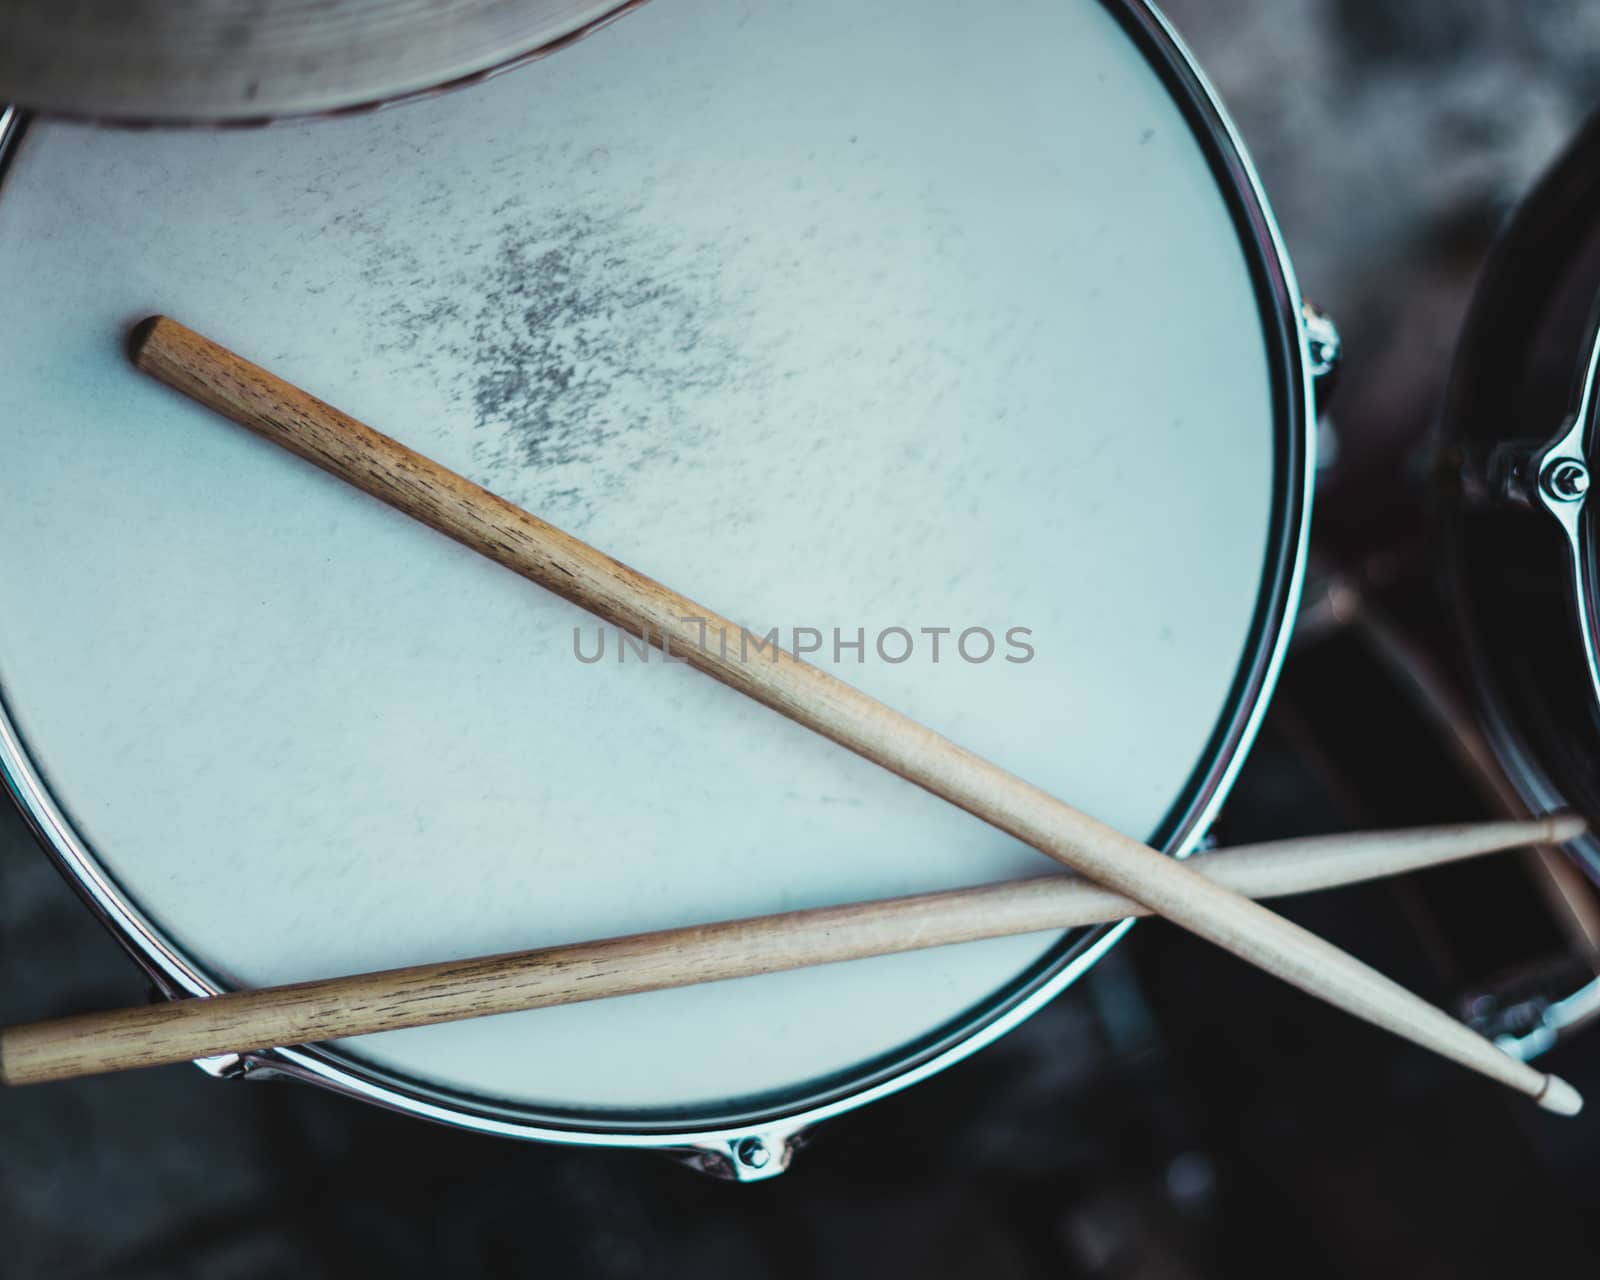 Pretty drummer with drumsticks in an underground environment